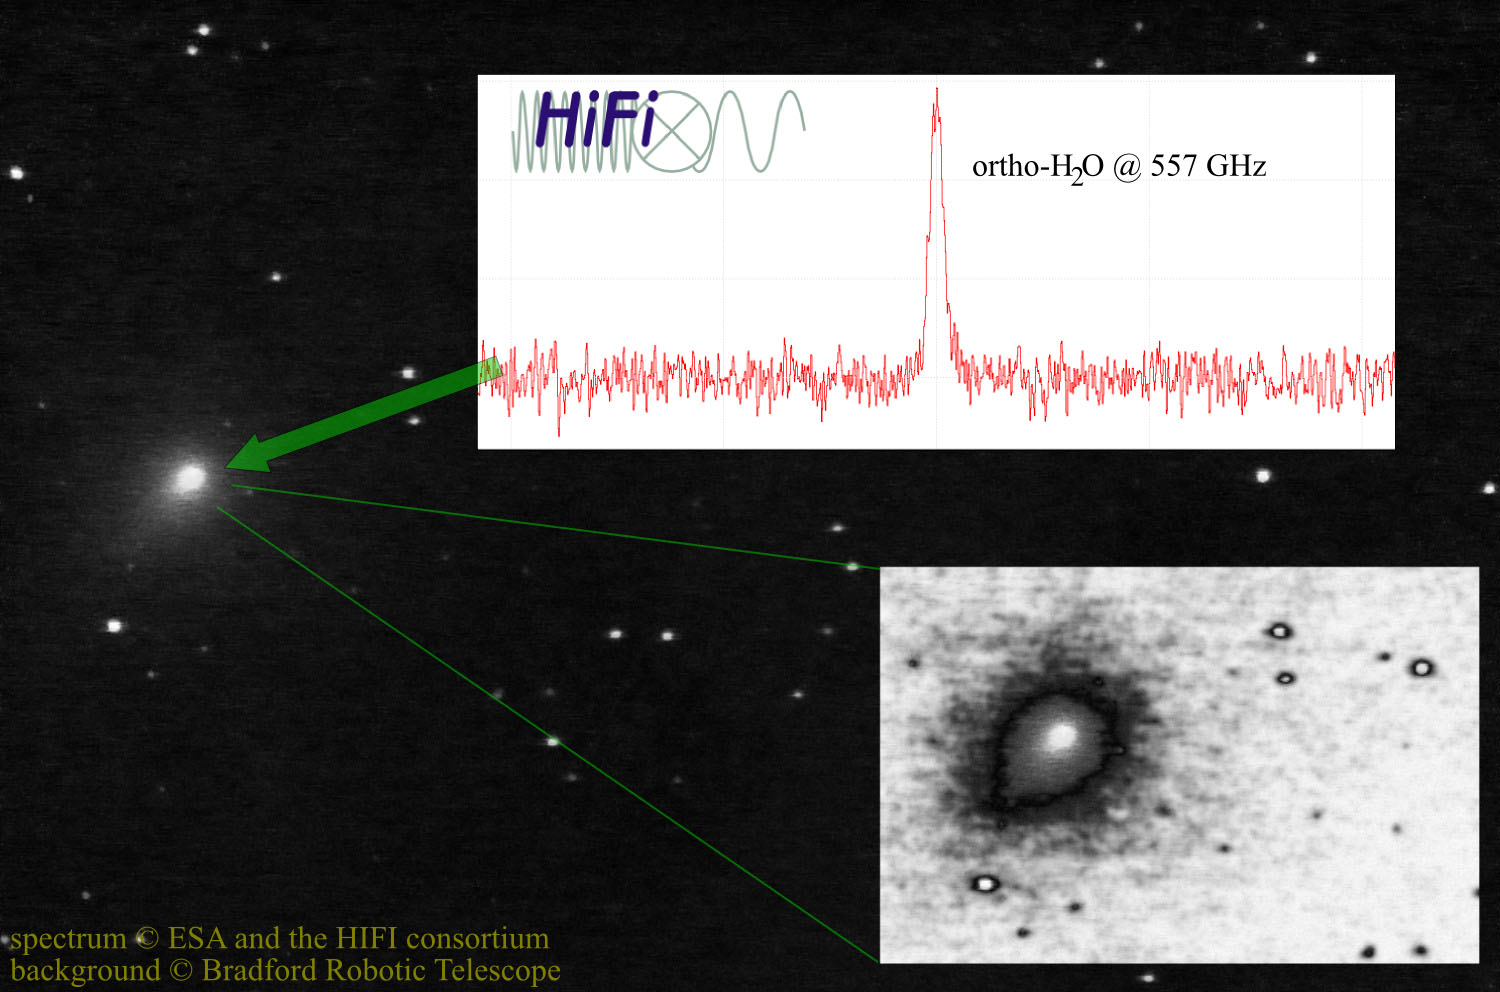 Herschel détecte de l'eau dans une comète